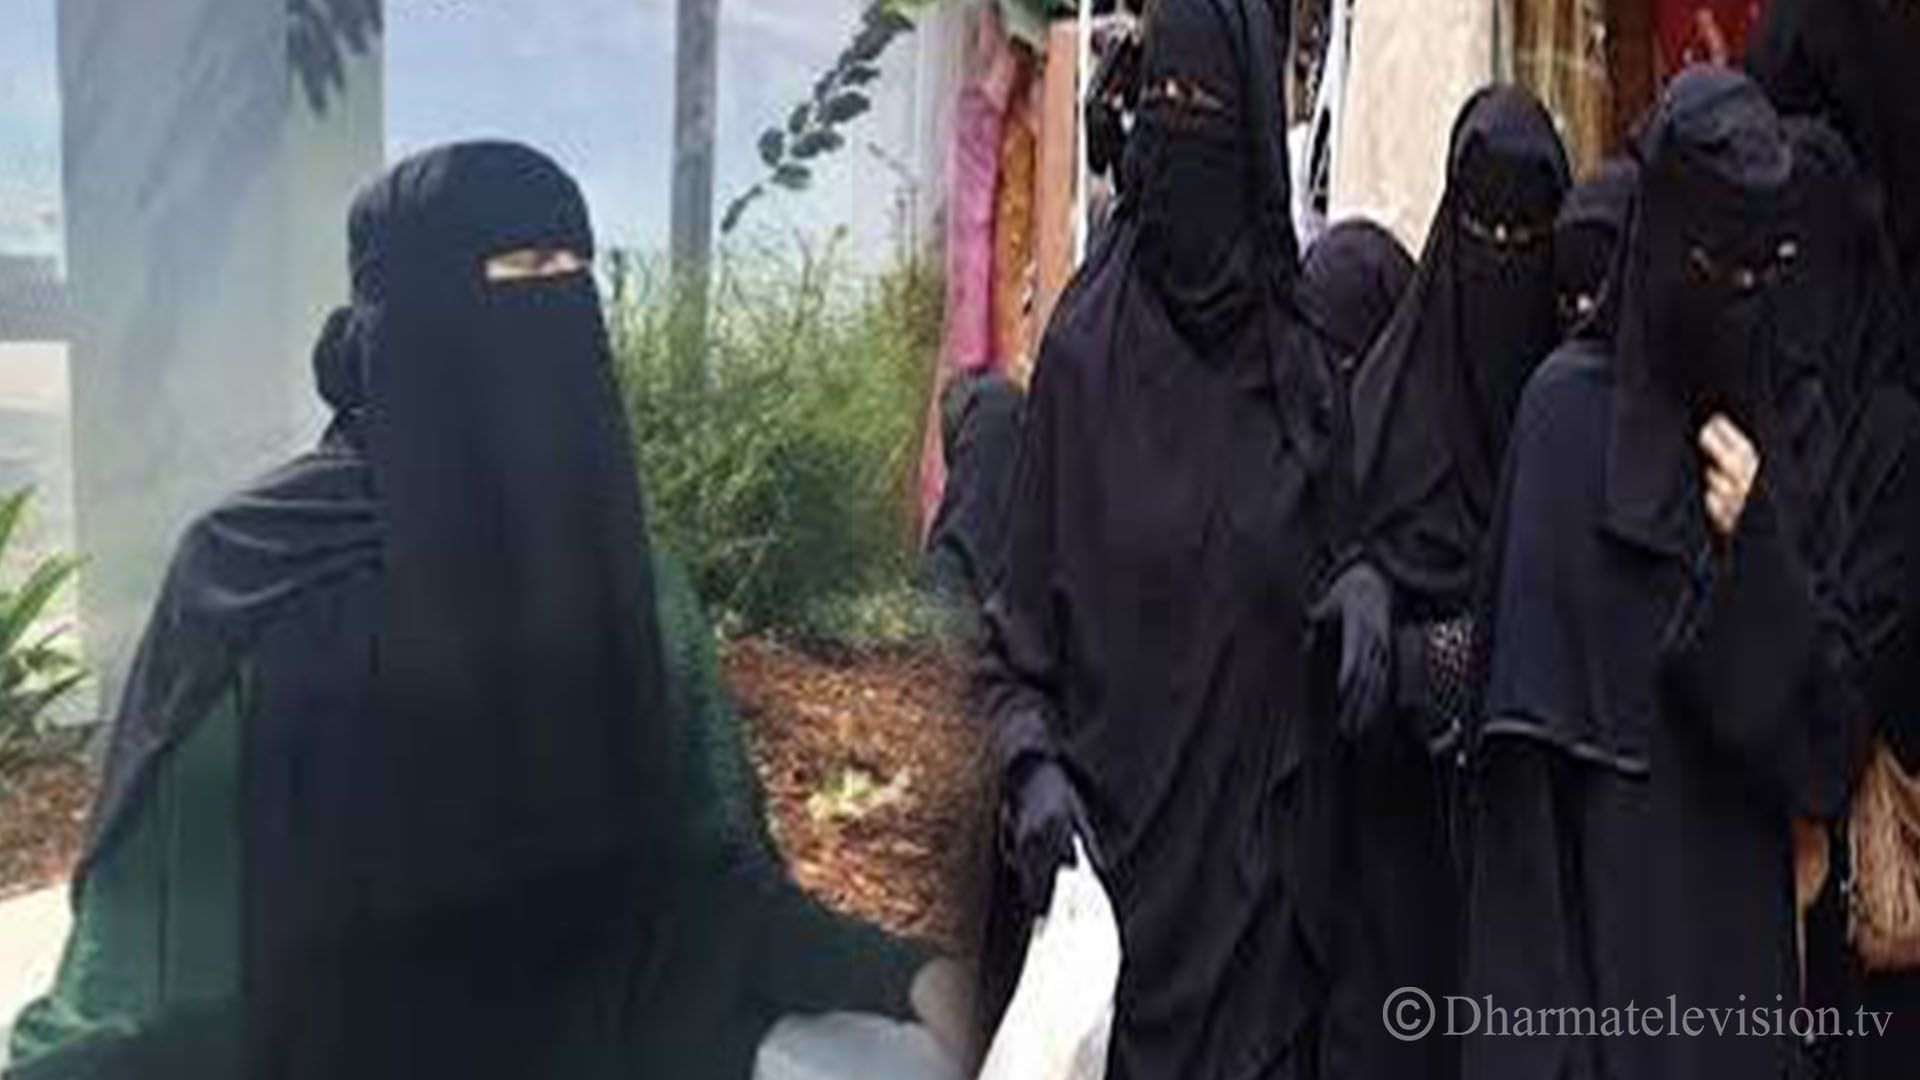 Burqa banned in Sri Lanka